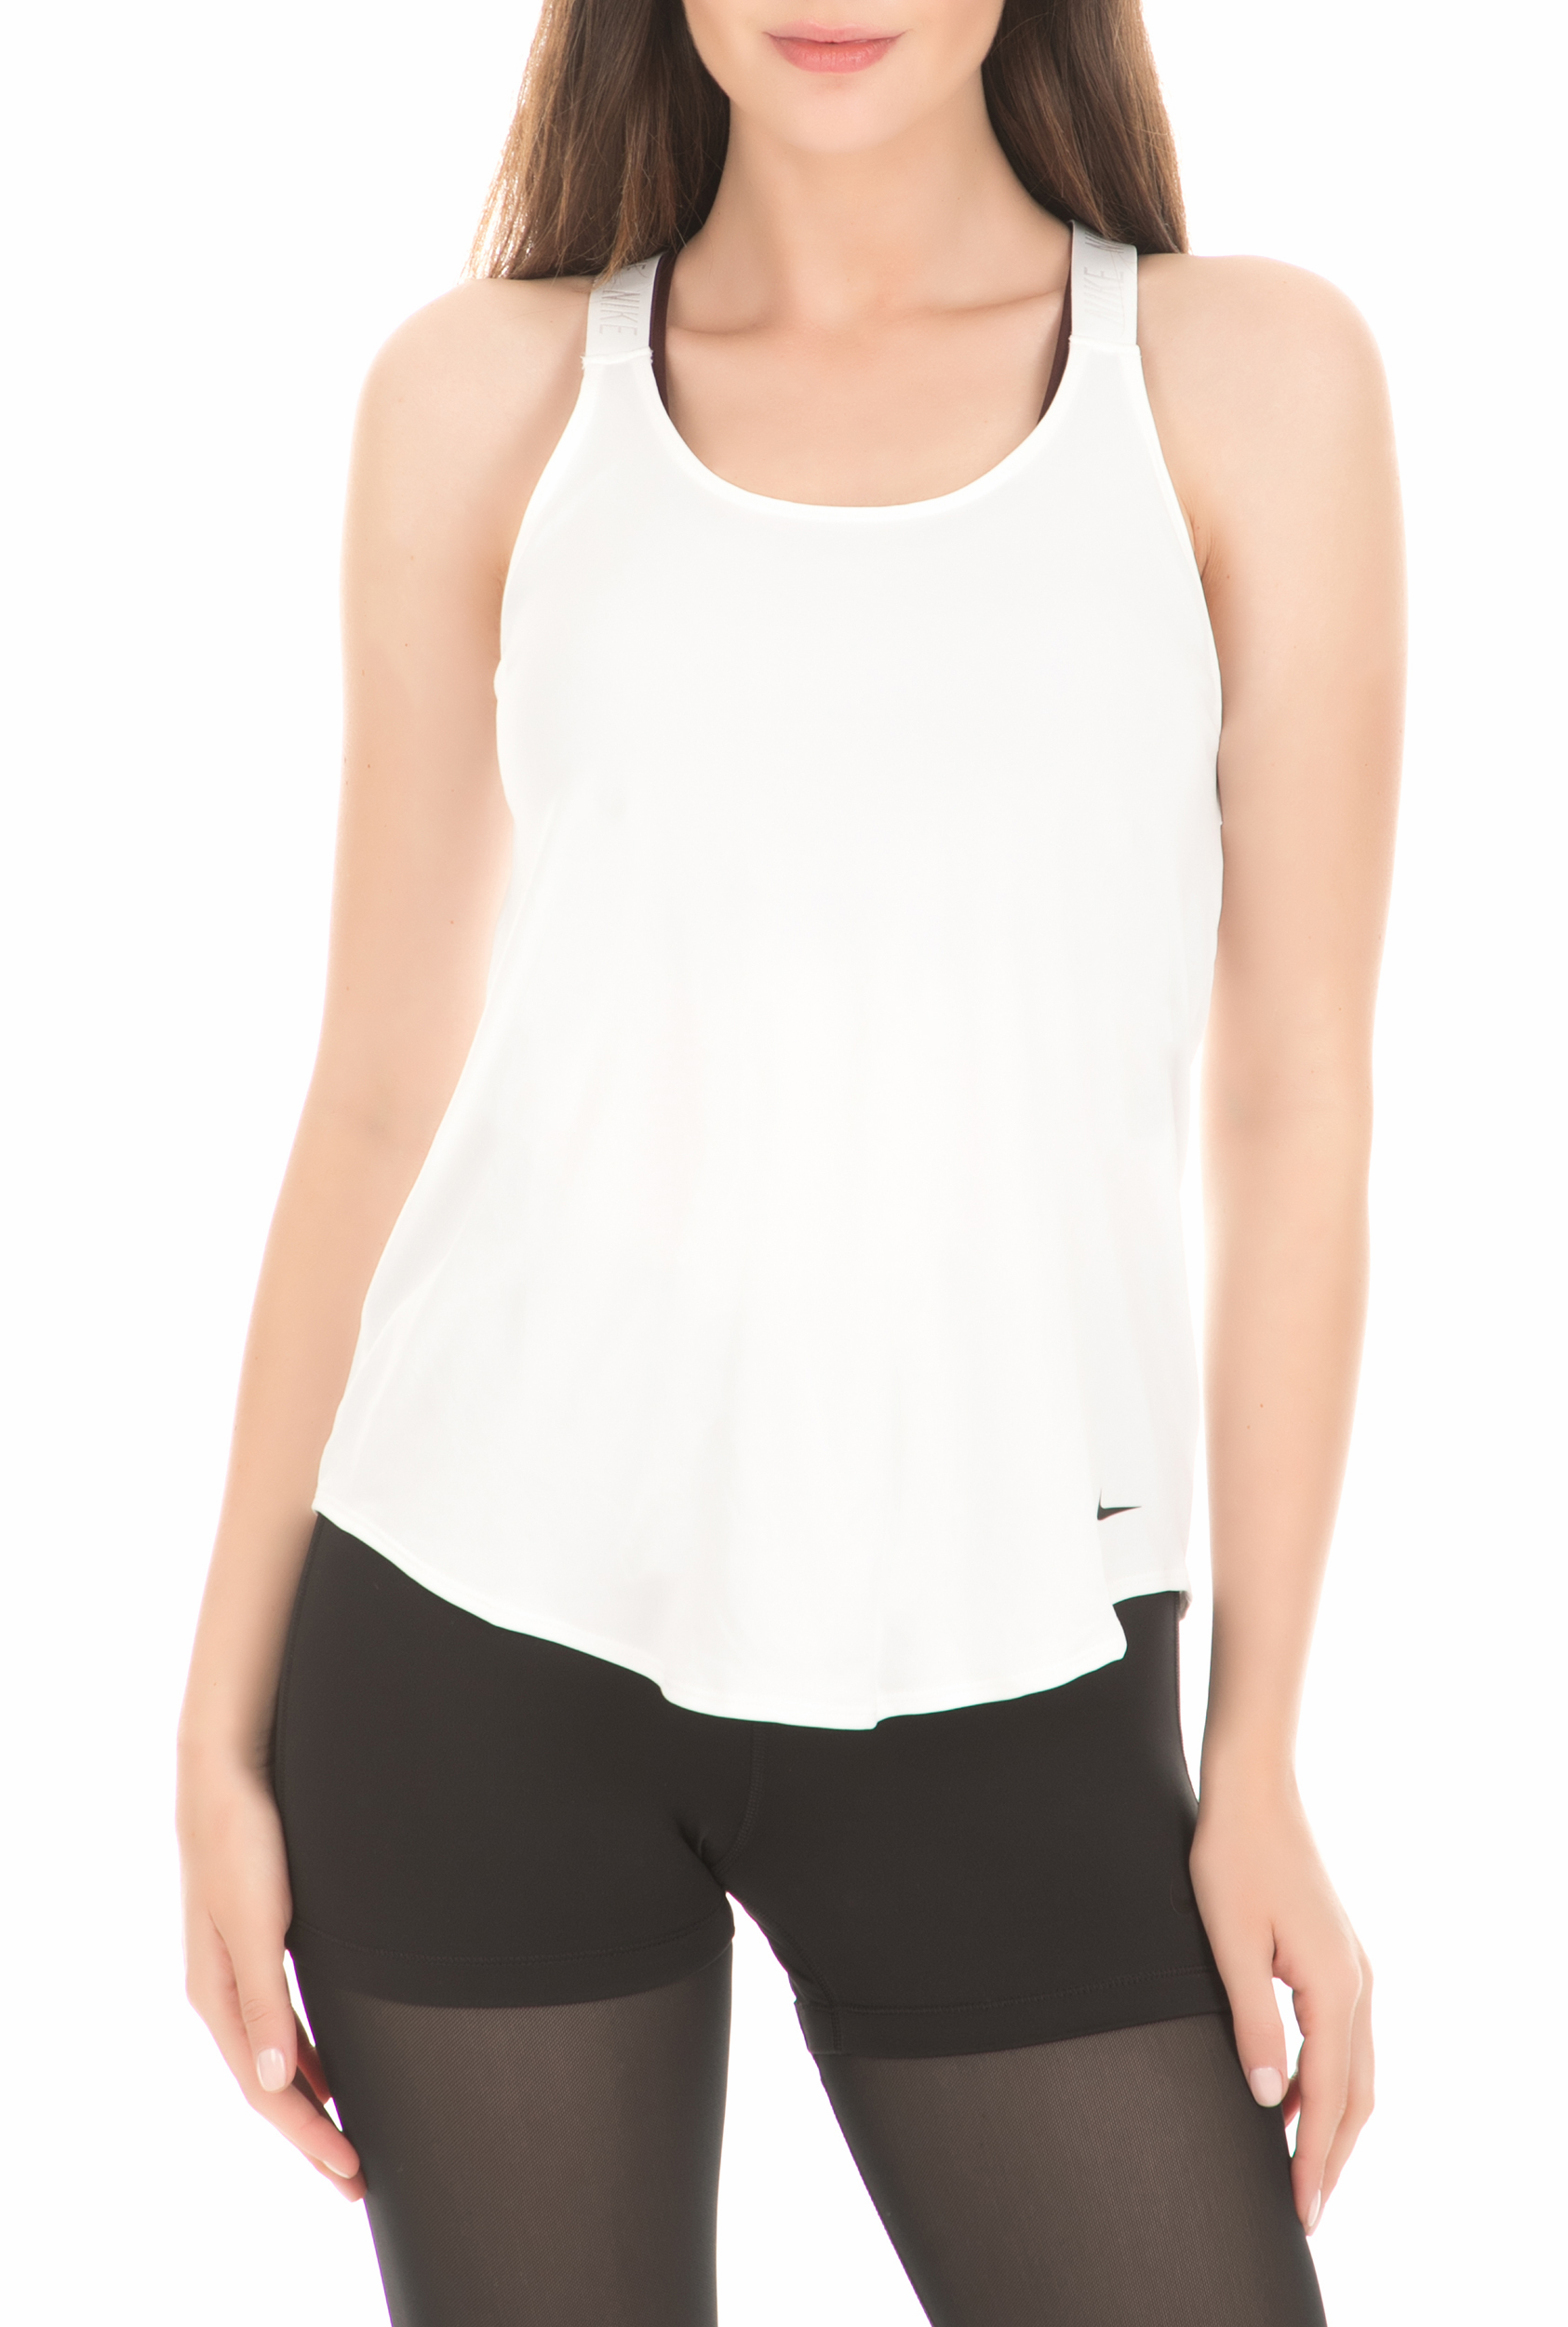 Γυναικεία/Ρούχα/Αθλητικά/T-shirt-Τοπ NIKE - Γυναικείο αμάνικο τοπ Nike Dri-FIT λευκό